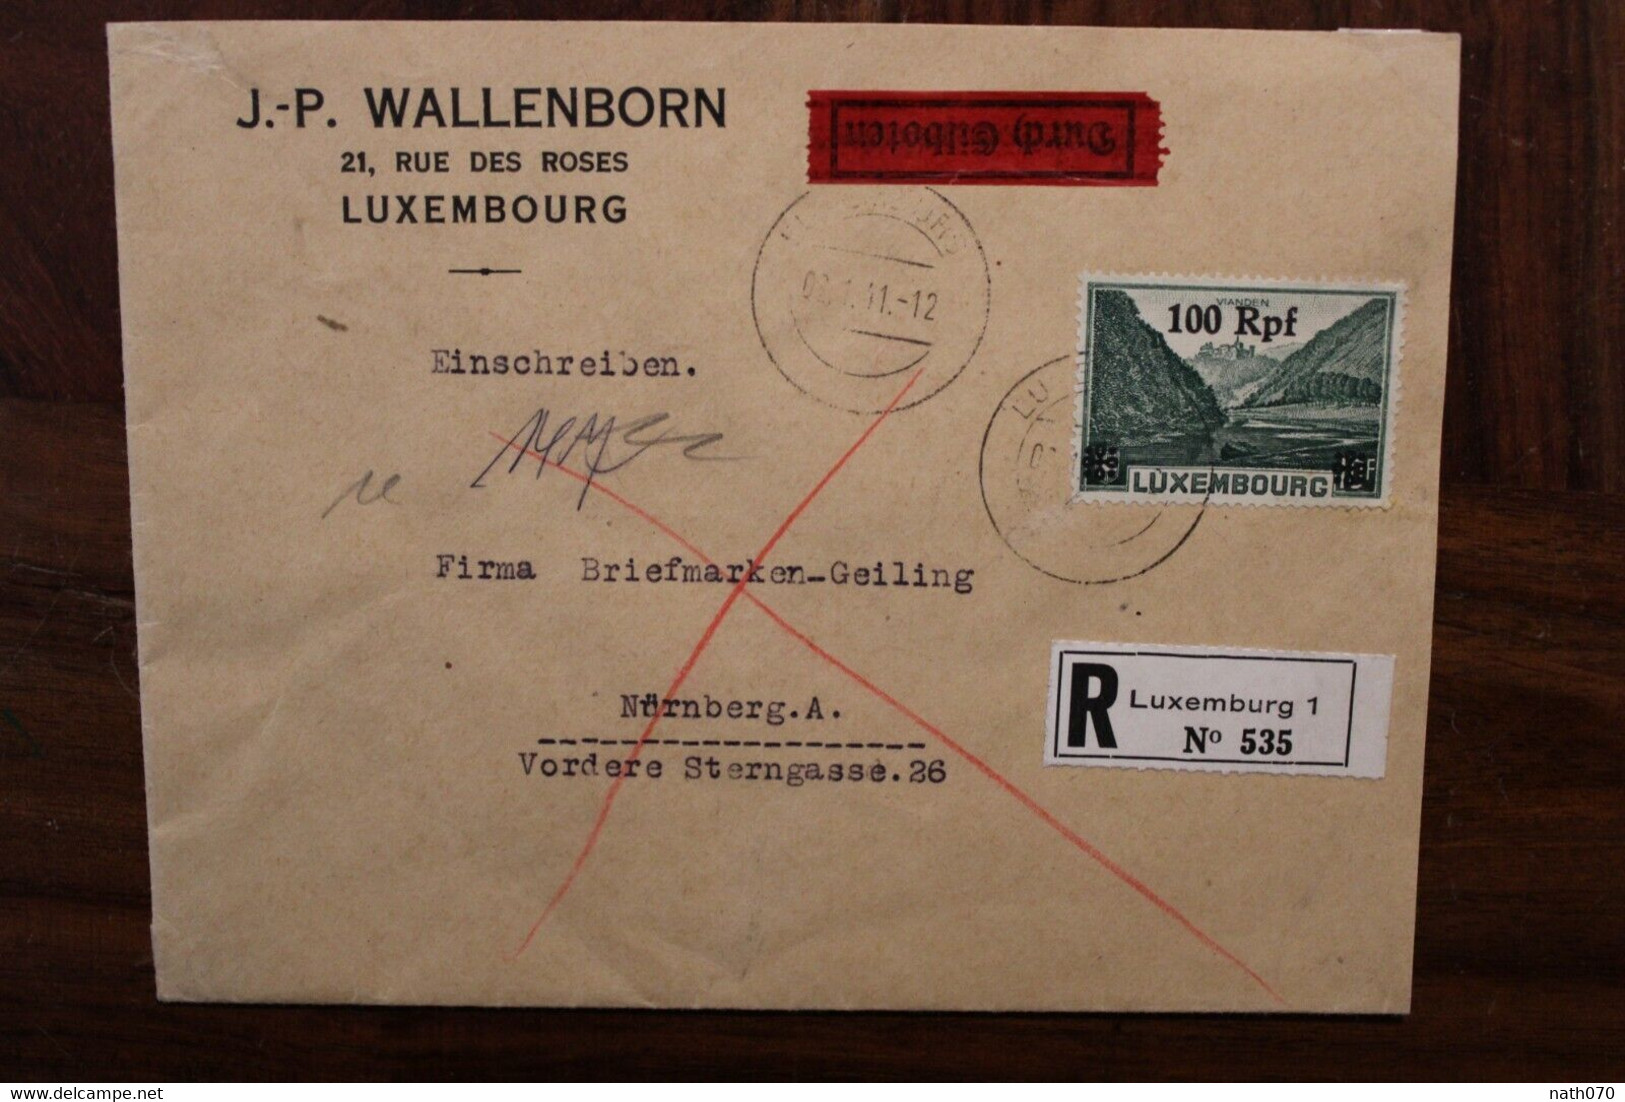 LUXEMBURG 1941 Durch Eilboten Einschreiben Cover Luxembourg Registered Recommandé Besetzung - 1940-1944 Deutsche Besatzung